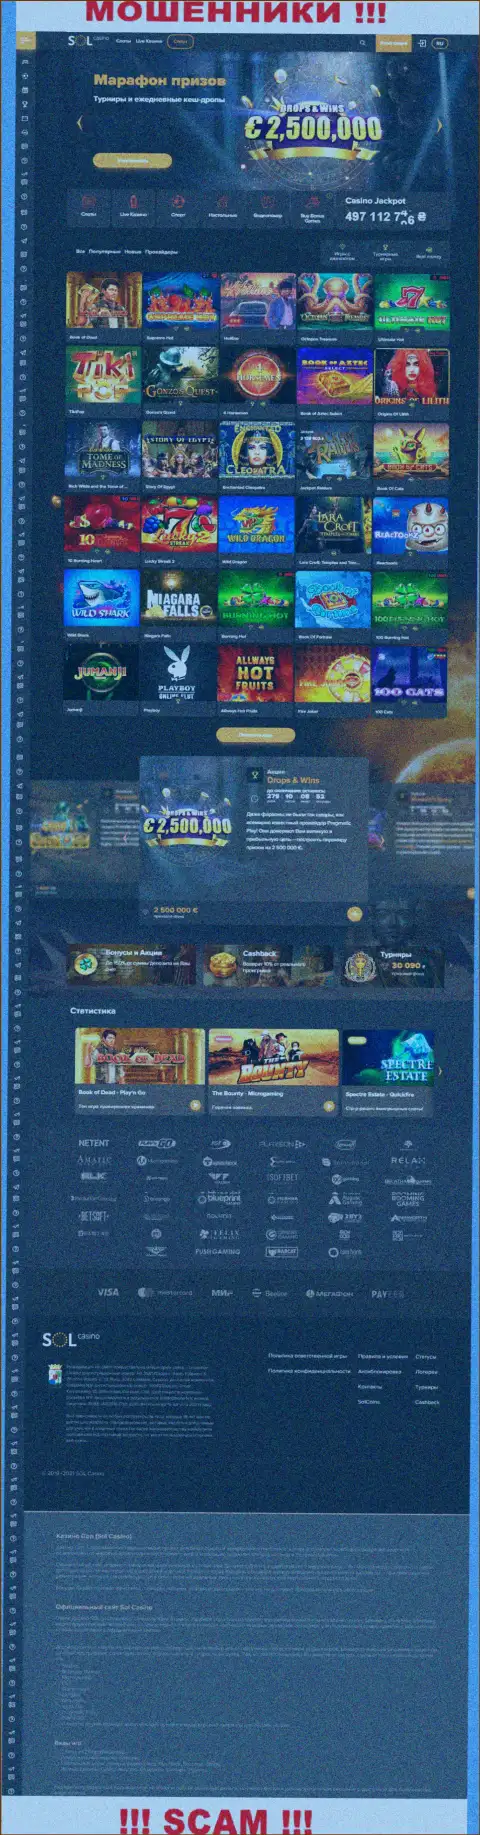 Основная страница сайта махинаторов Sol Casino